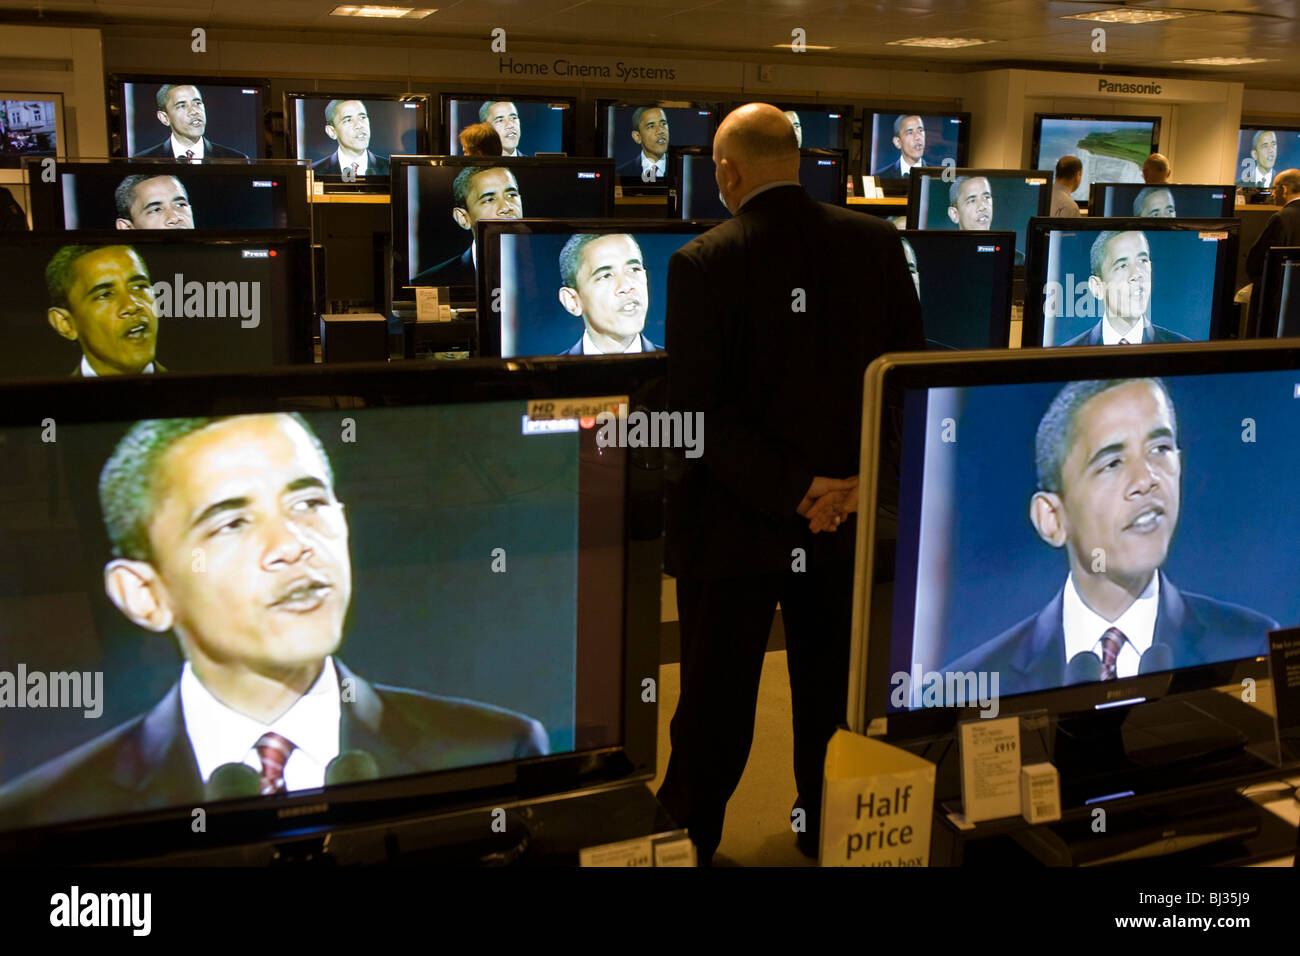 La victoire électorale de Barack Obama donne aux discours sur les écrans de télévision de BBC News sur étage audio de John Lewis department store Banque D'Images